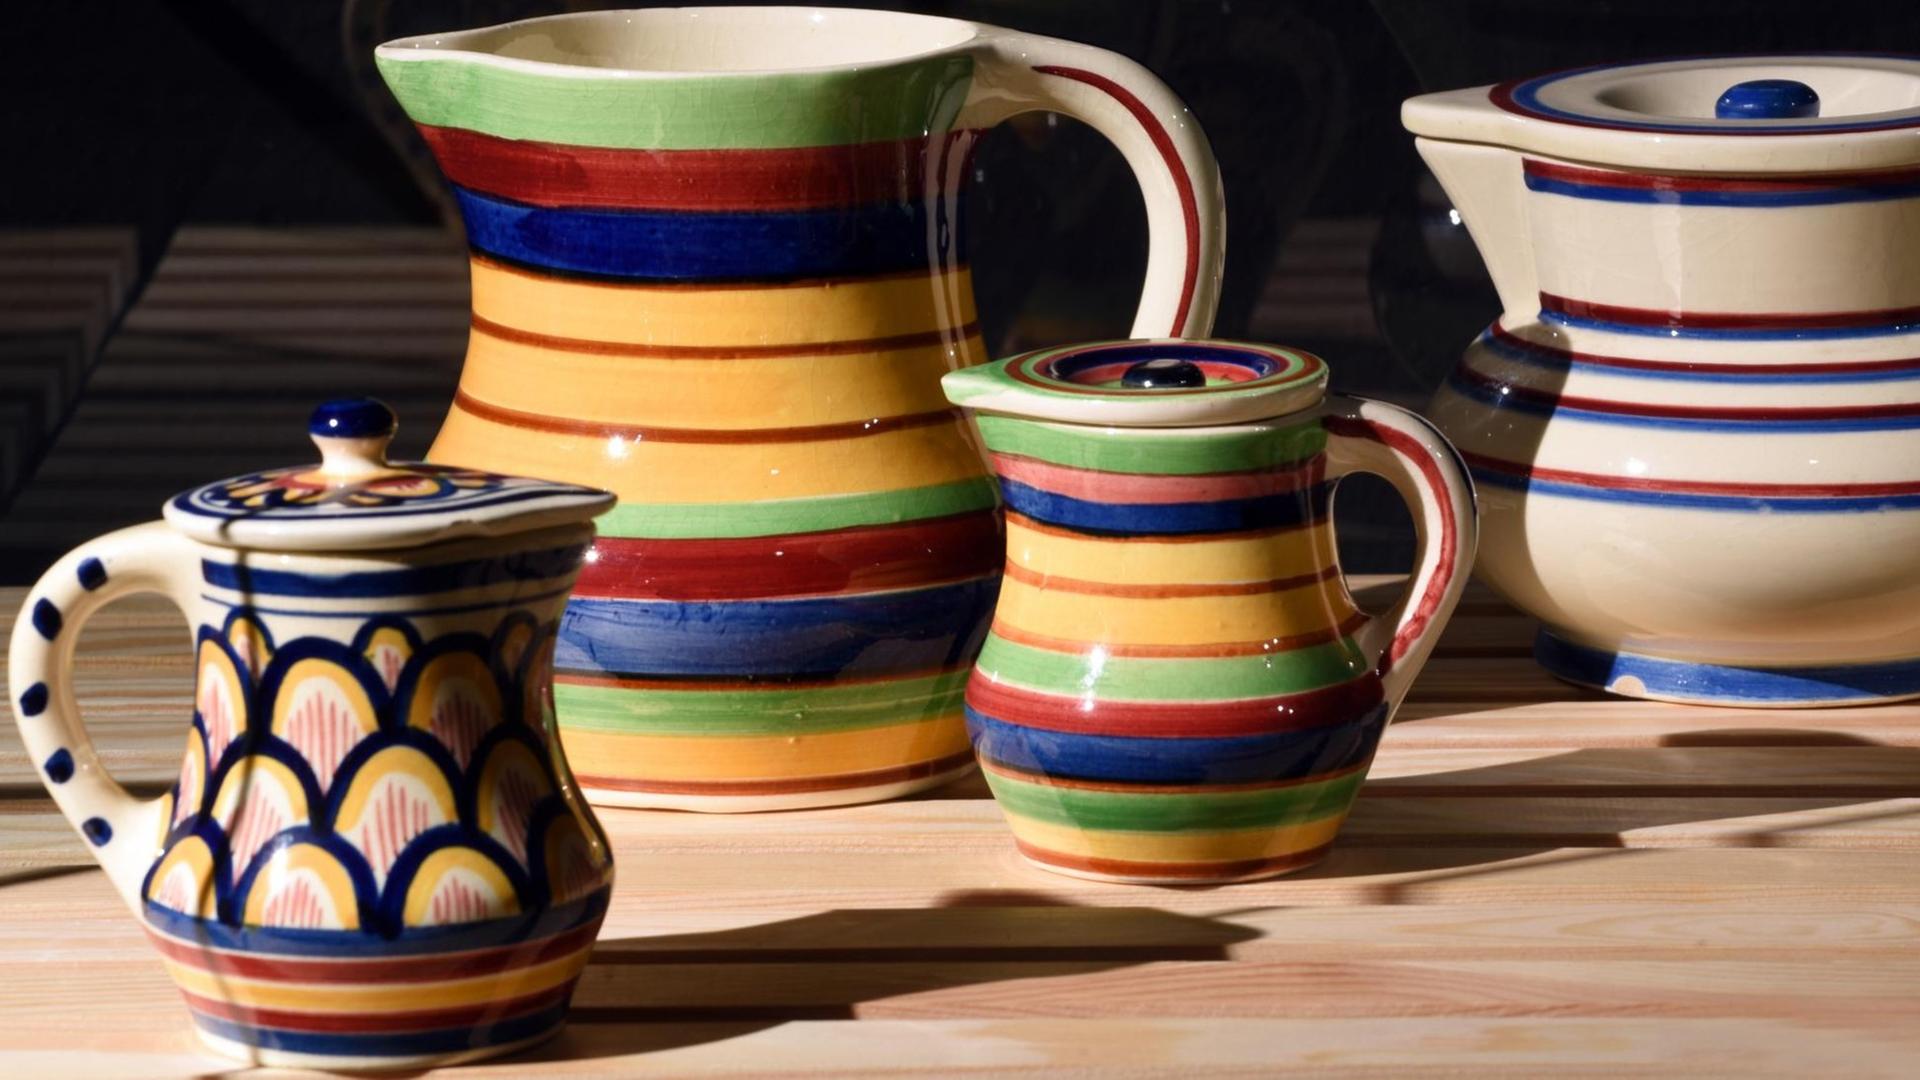 Farbenfrohe Keramik-Kannen auf einem Holztisch.